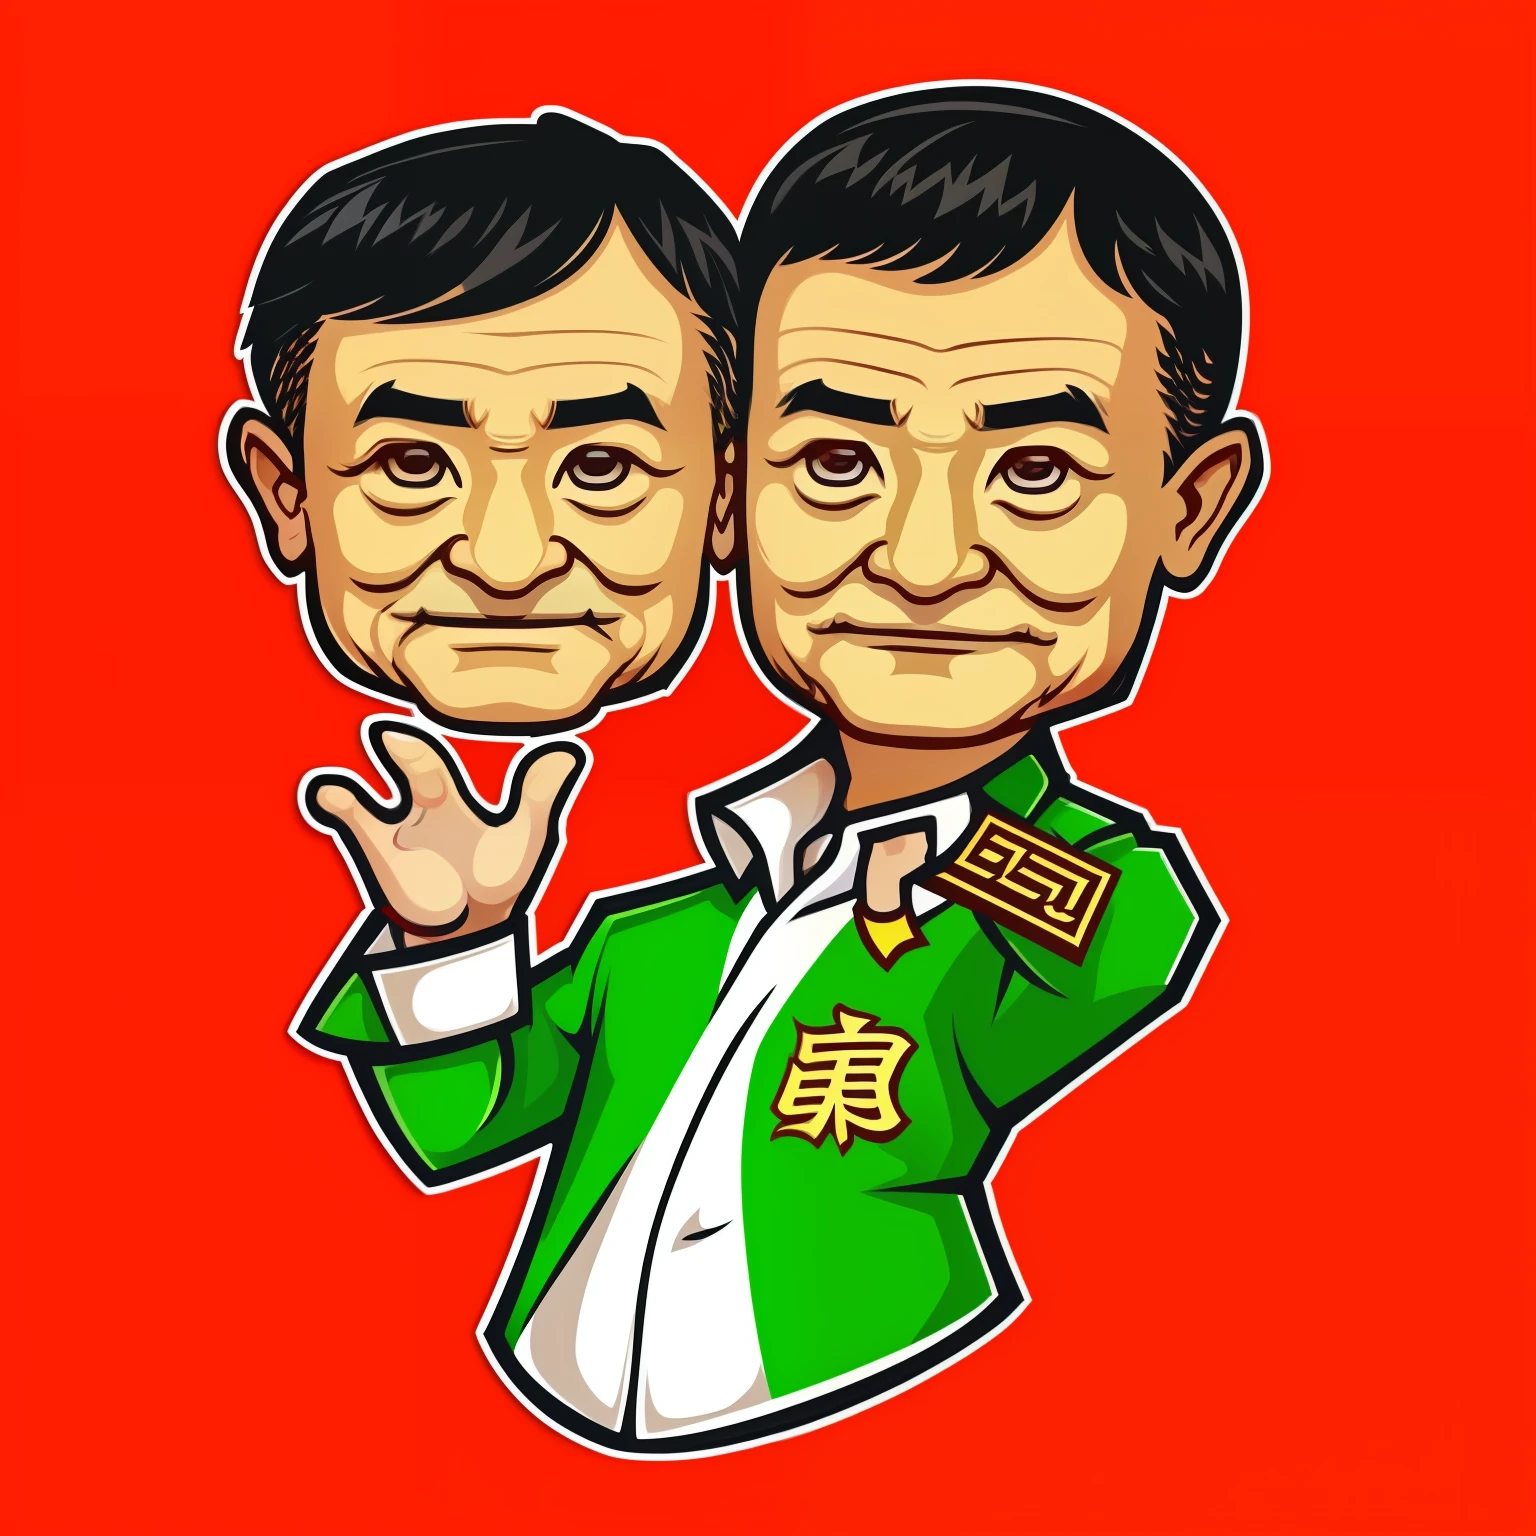 Adesivos chibi dos desenhos animados com o Sr..Jack Ma que o dono do Alibaba, com um design bonito e vetorial, Disponível em 10 pacotes